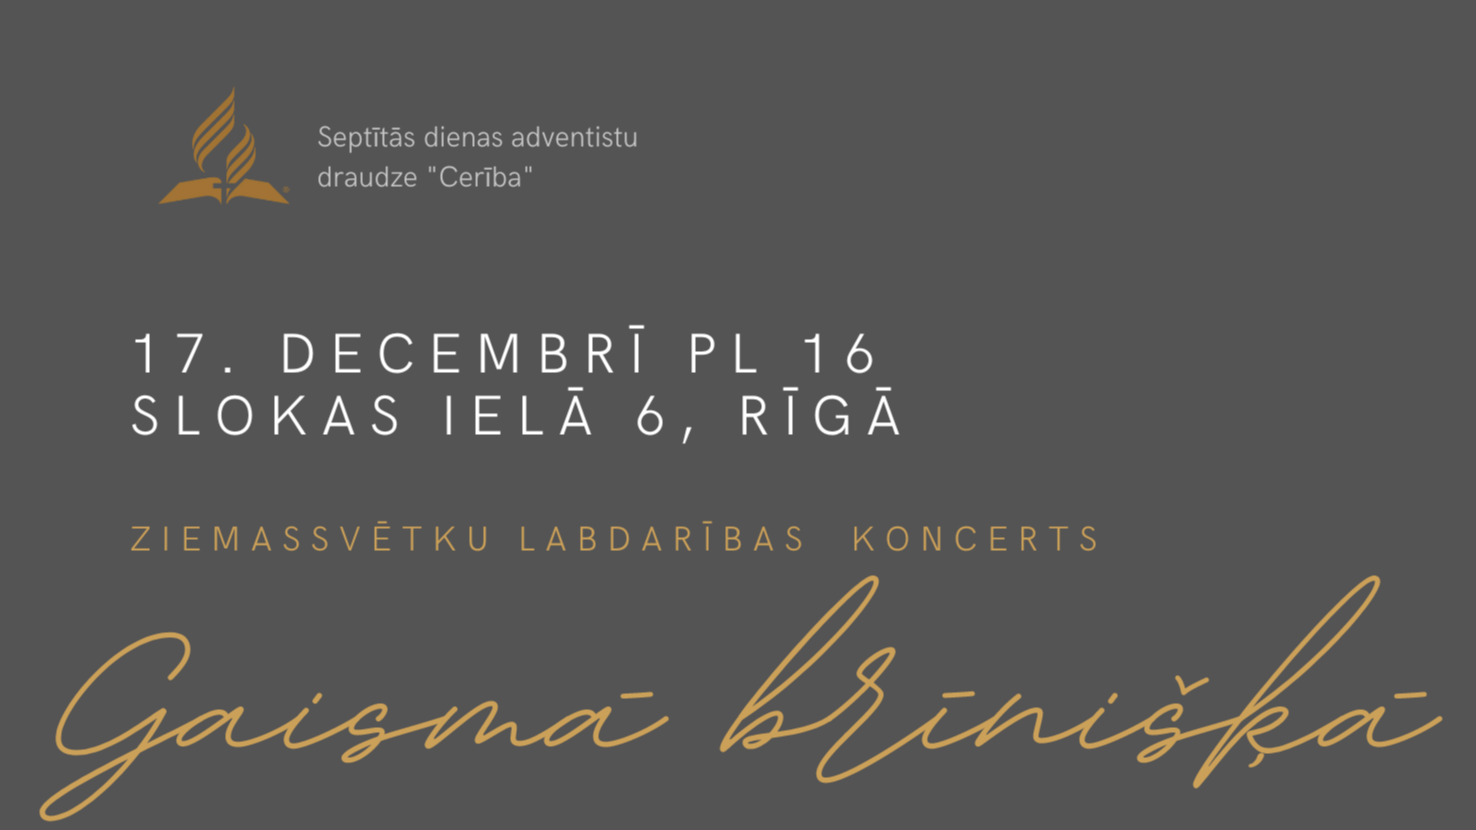 Rīgas kamerkoris “Vox Animae” ielūdz uz Ziemassvētku labdarības koncertu “Gaismā brīnišķā”